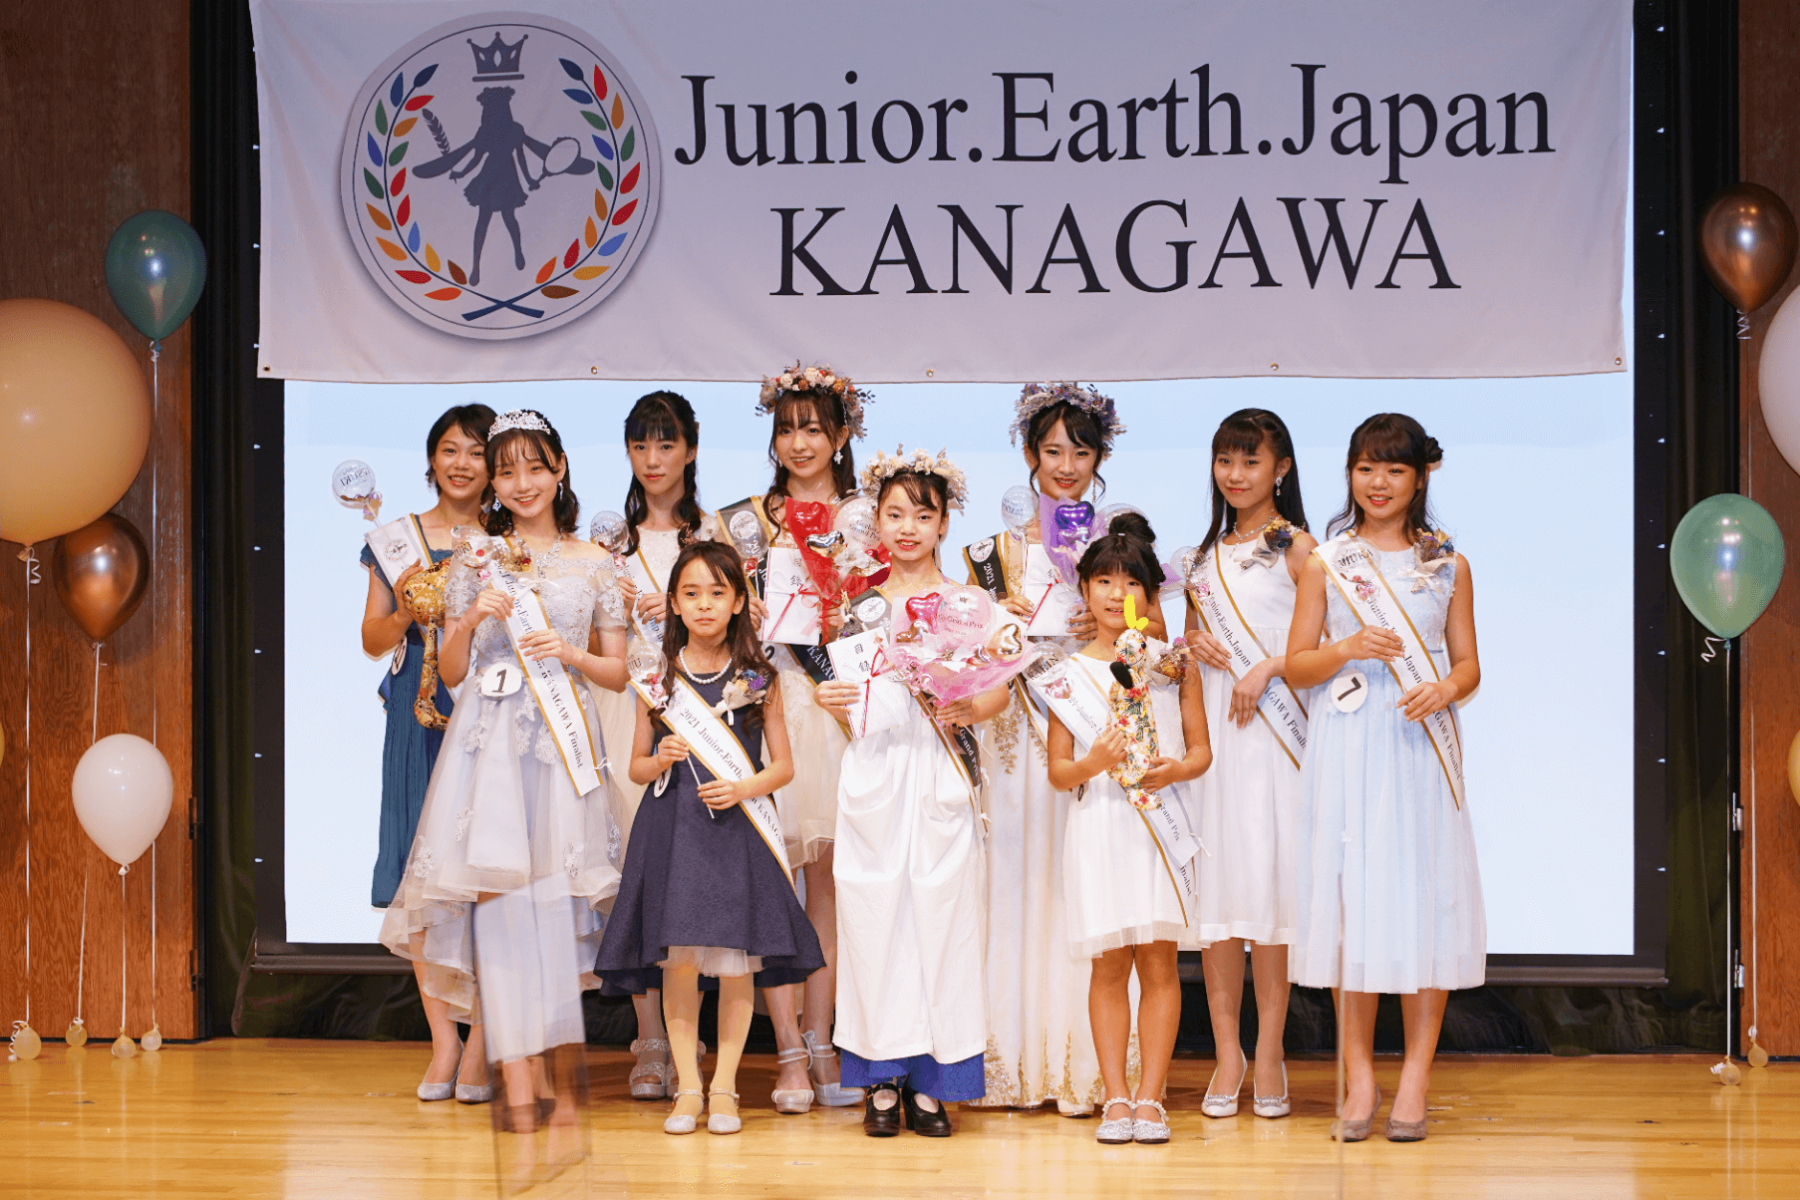 Junior.Earth.Japan KANAGAWA 2021